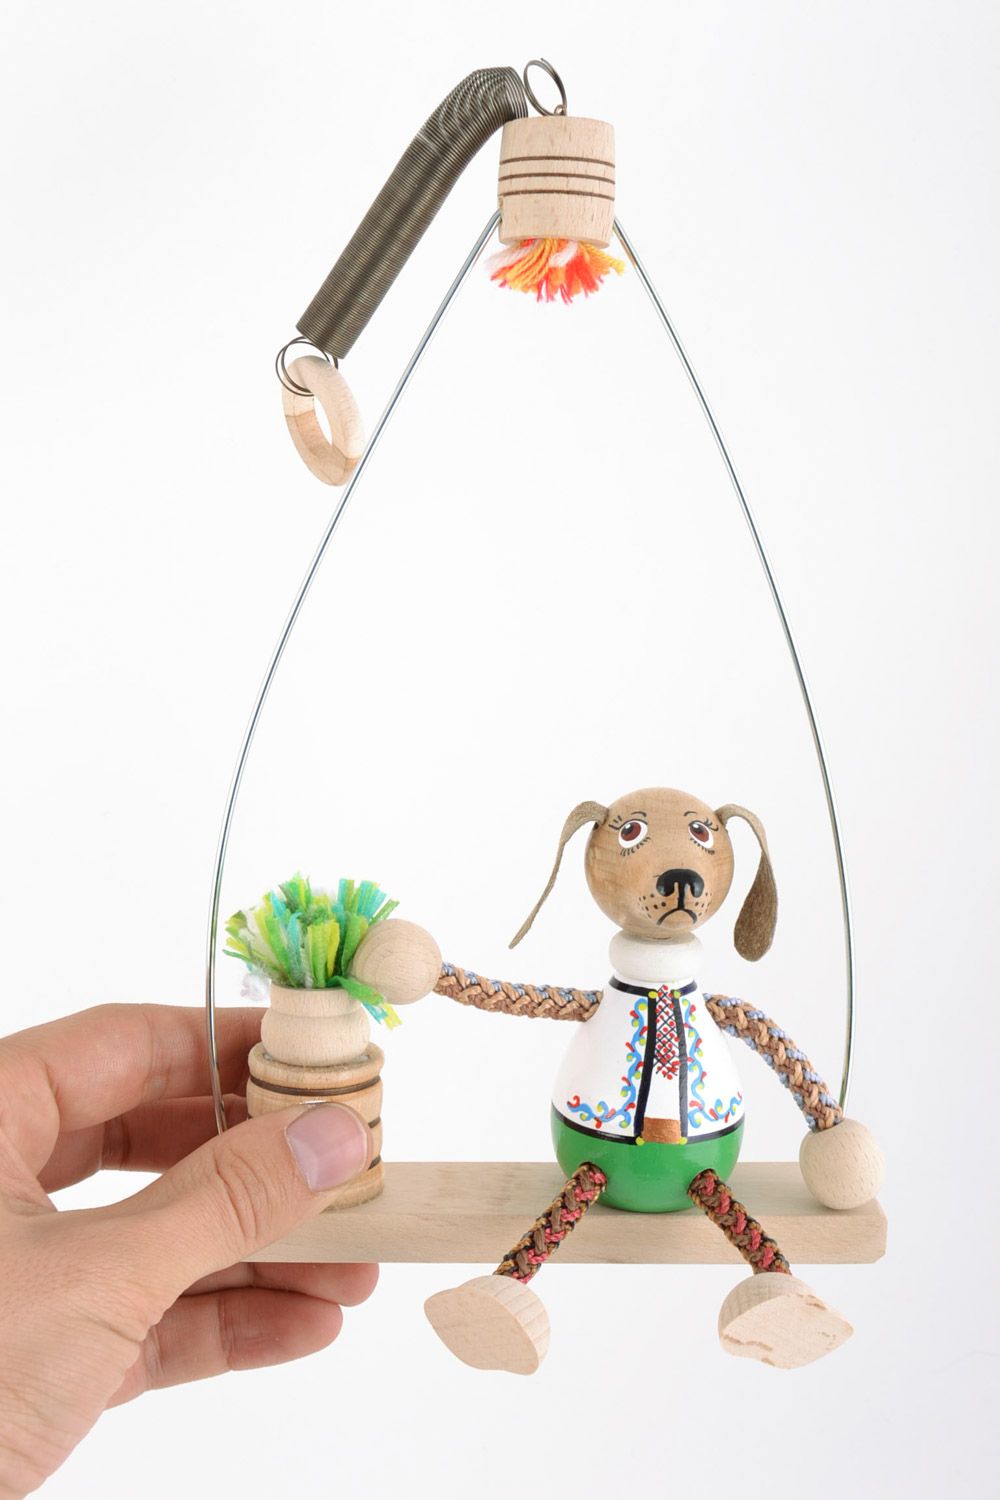 Juguete de madera hecho a mano pintado muñeca en banco para jugar y decorar foto 2